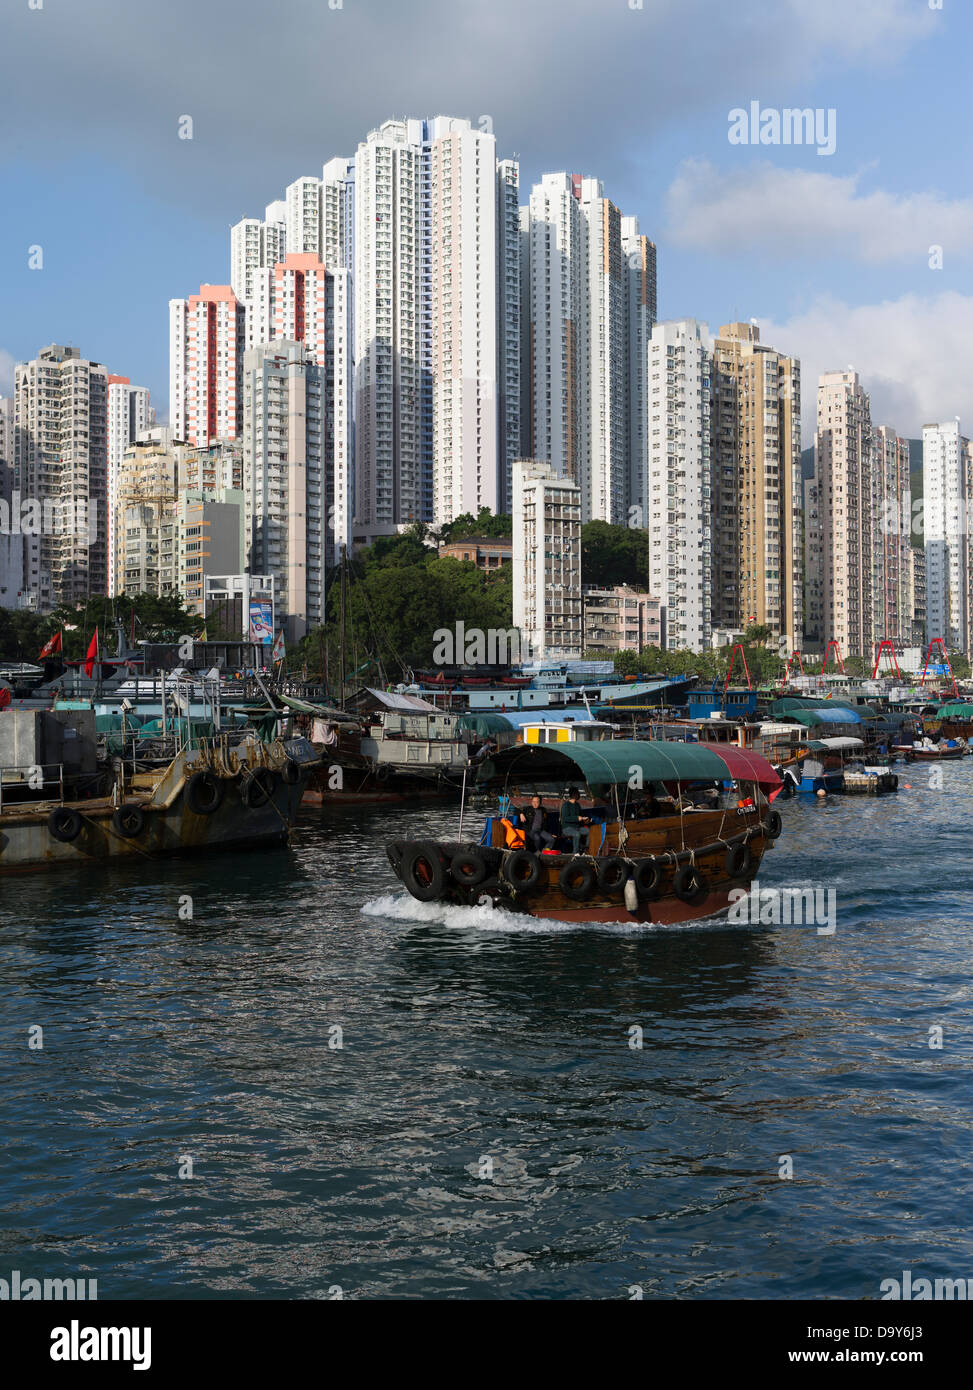 Dh chinesische Fähre sampan HAFEN ABERDEEN HONG KONG Hochhaus wohnwolkenkratzer Wohnungen Boote Island Harbour junk Transport Stockfoto